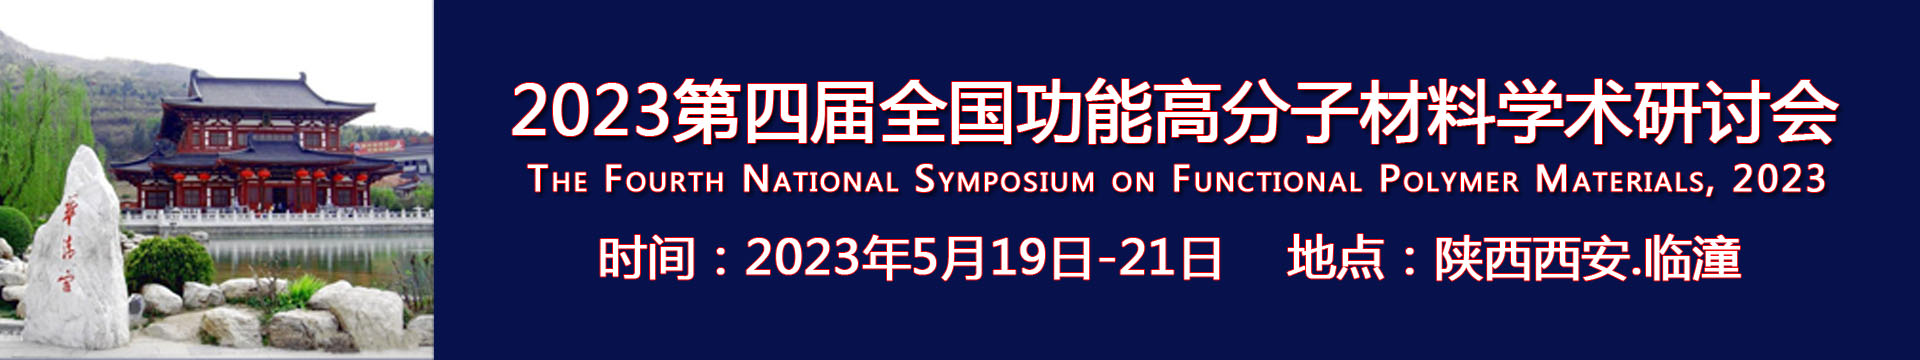 2023第四届全国功能高分子材料学术研讨会